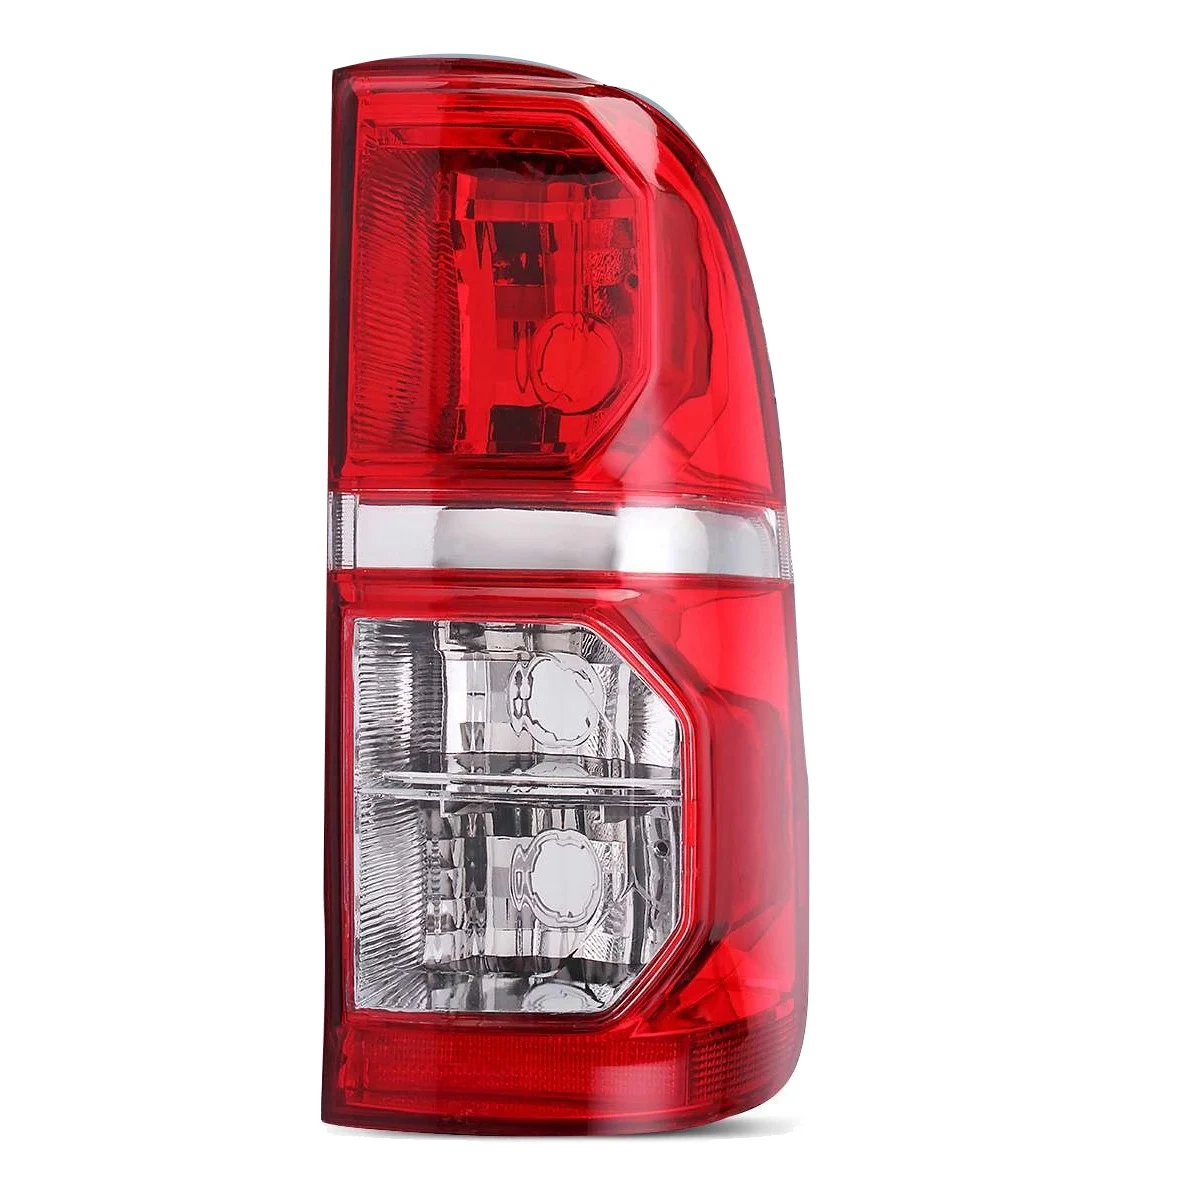 

Задний стоп-сигнал для Toyota Hilux 2005-2015, задний фонарь, стоп-сигнал, задний фонарь без правой лампы